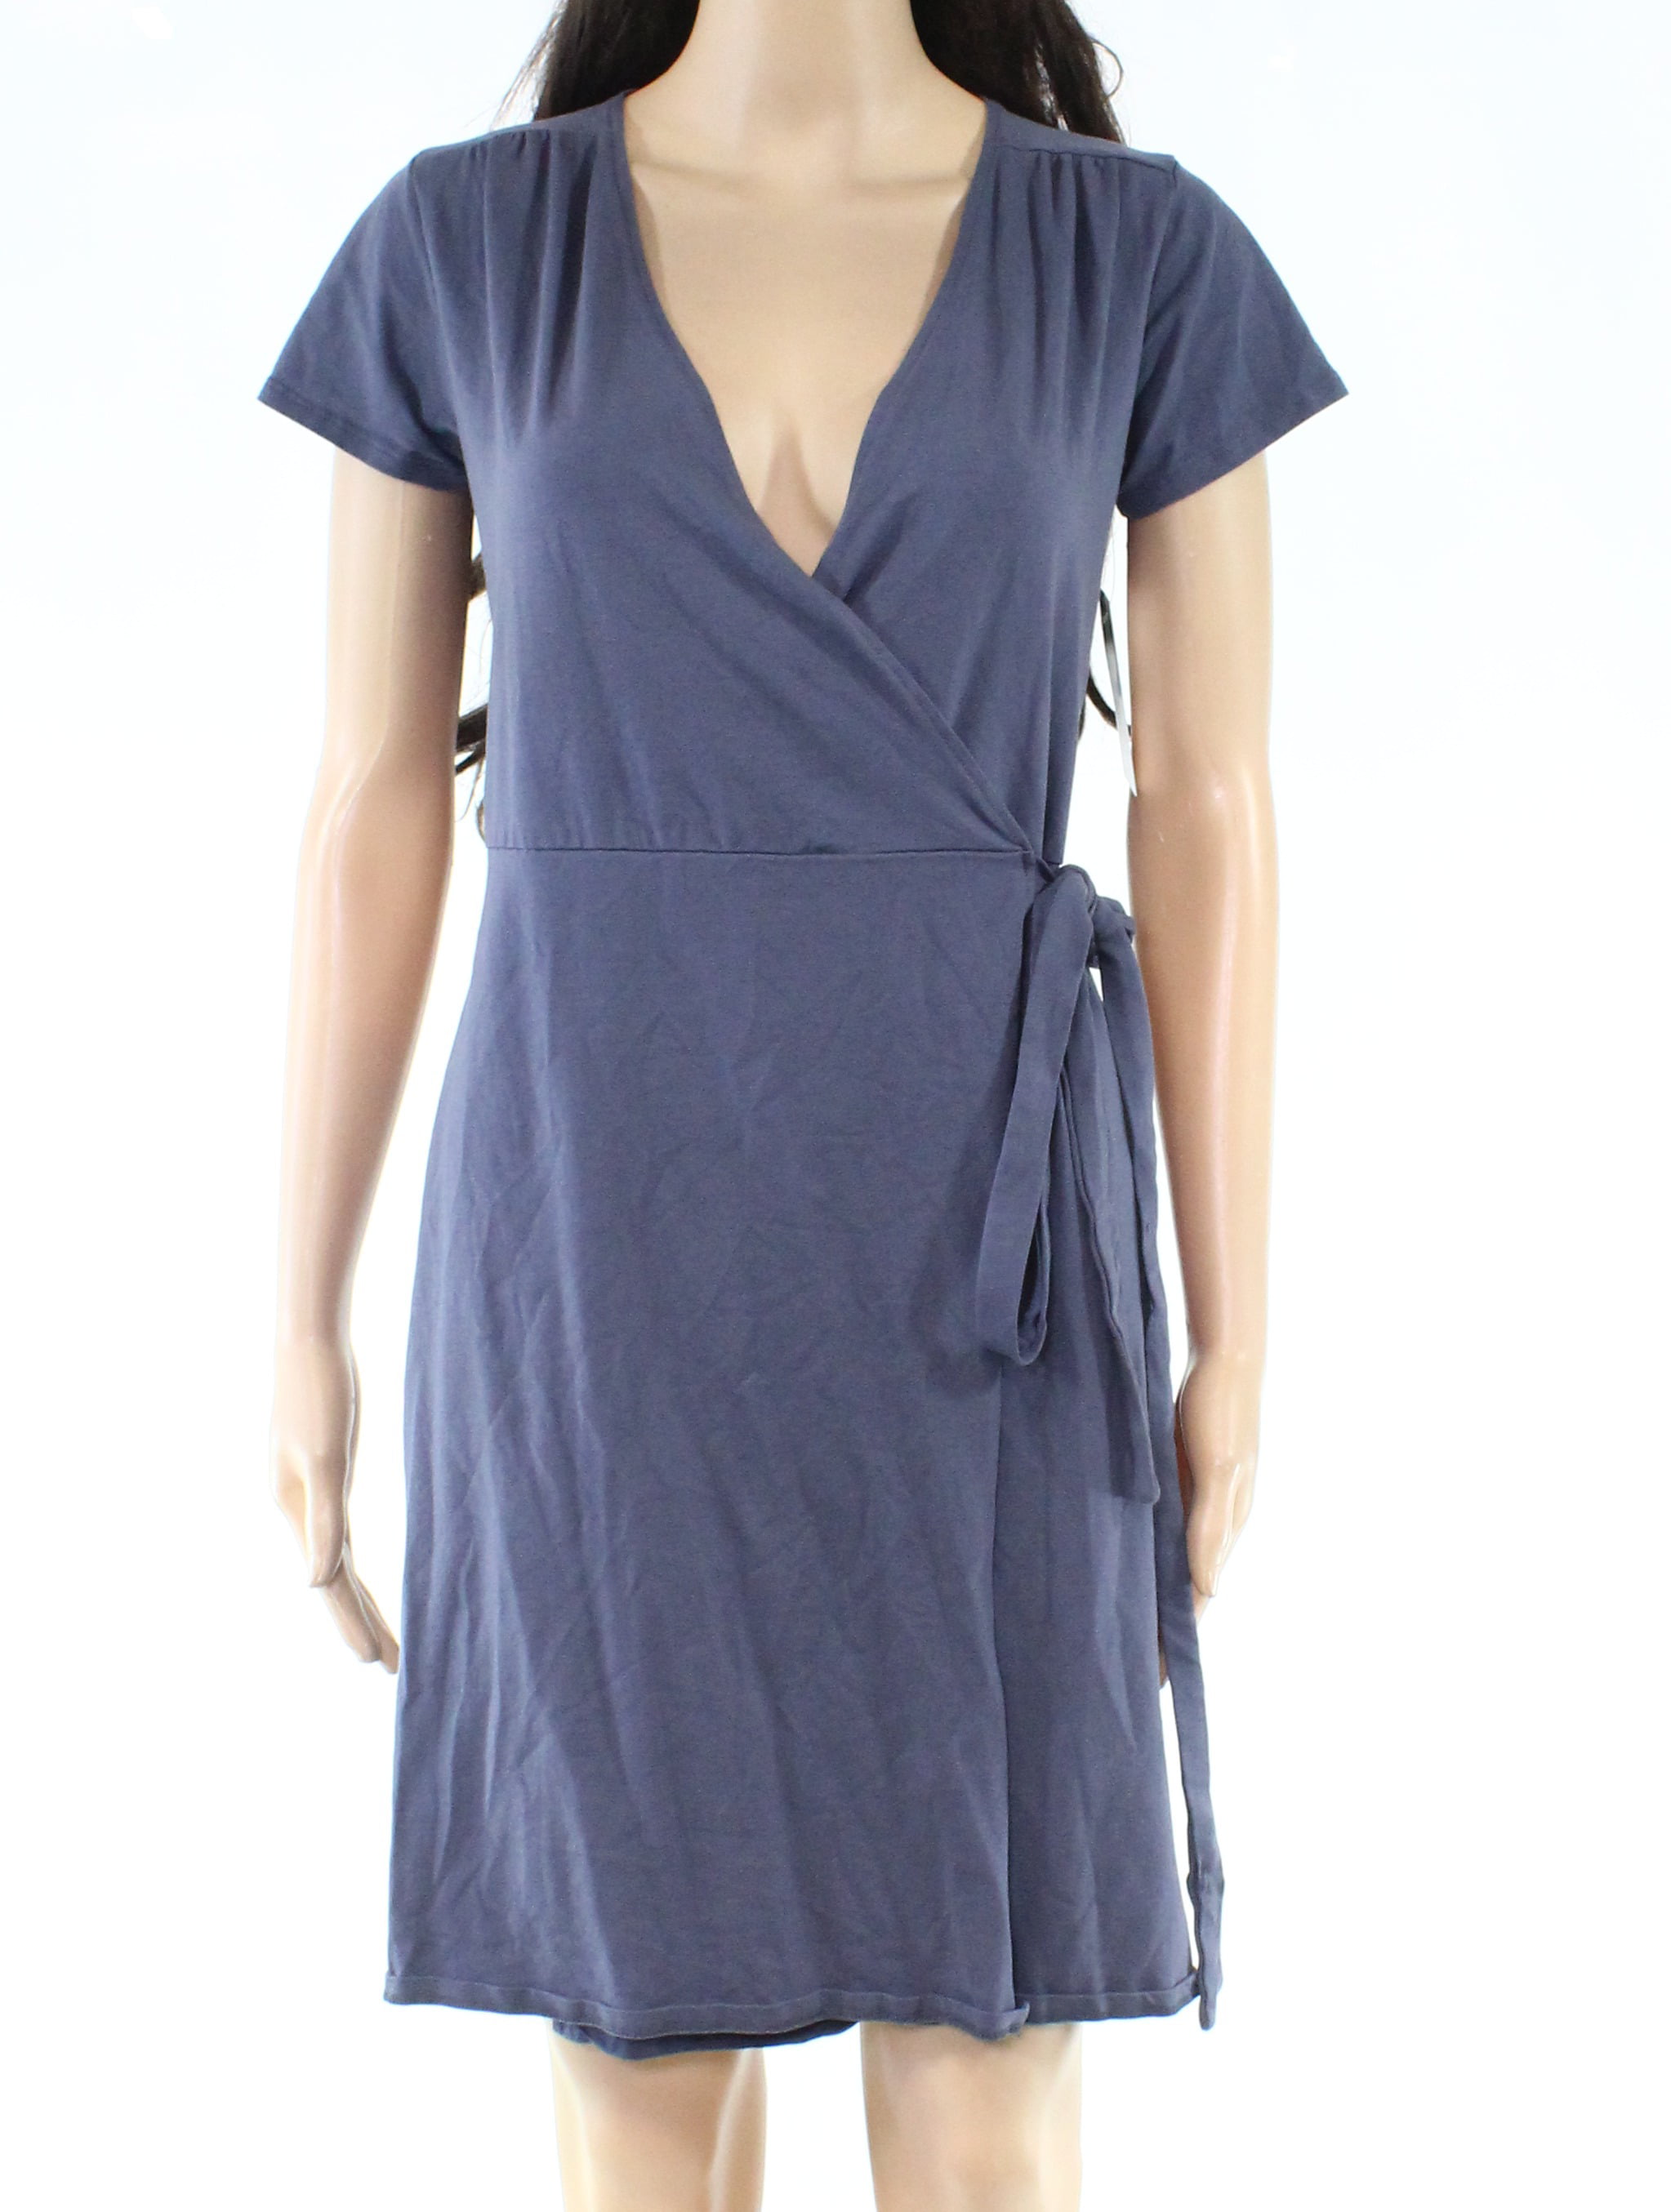 Designer Brand Dresses - Womens Dress Small Wrap Surplice V-Neck S ...